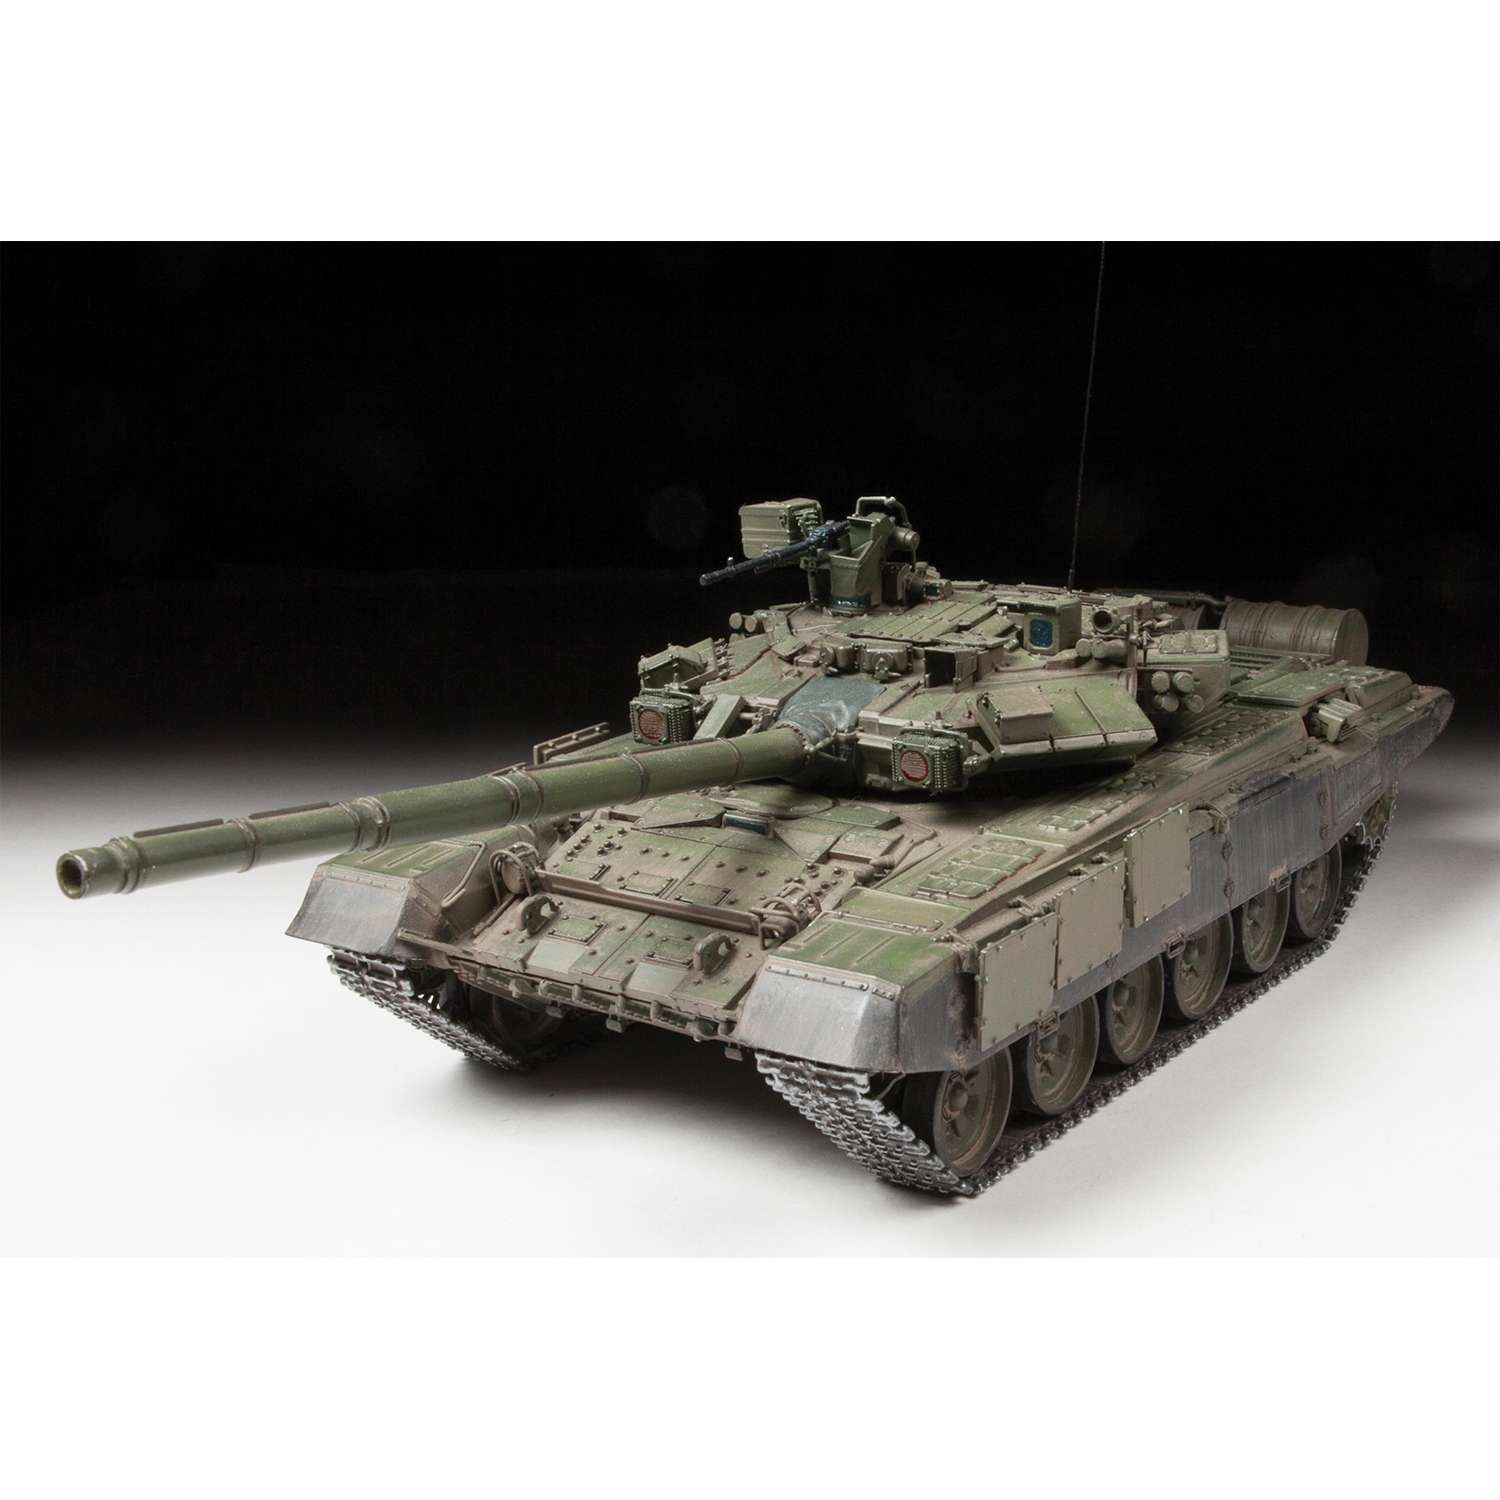 Сборная модель танка Т - купить в Москве по выгодной цене, фото, отзывы